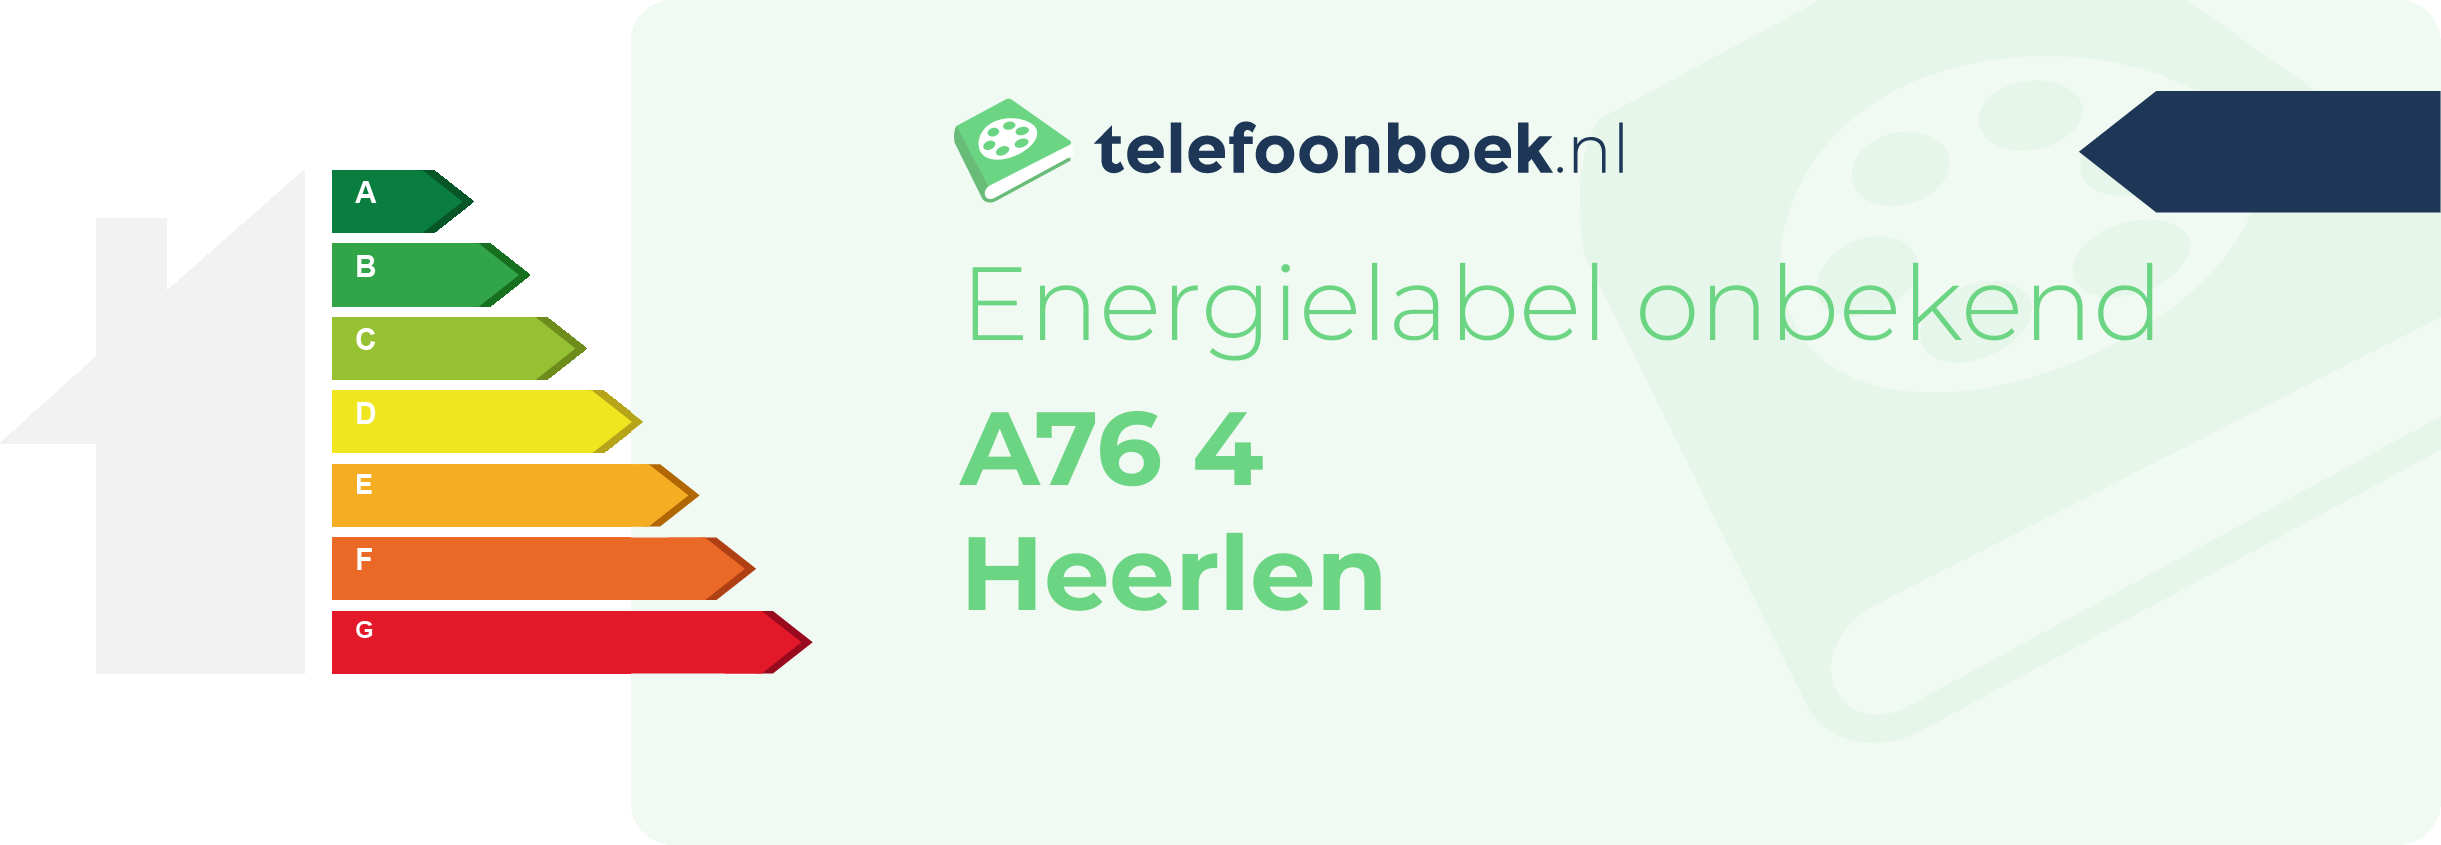 Energielabel A76 4 Heerlen